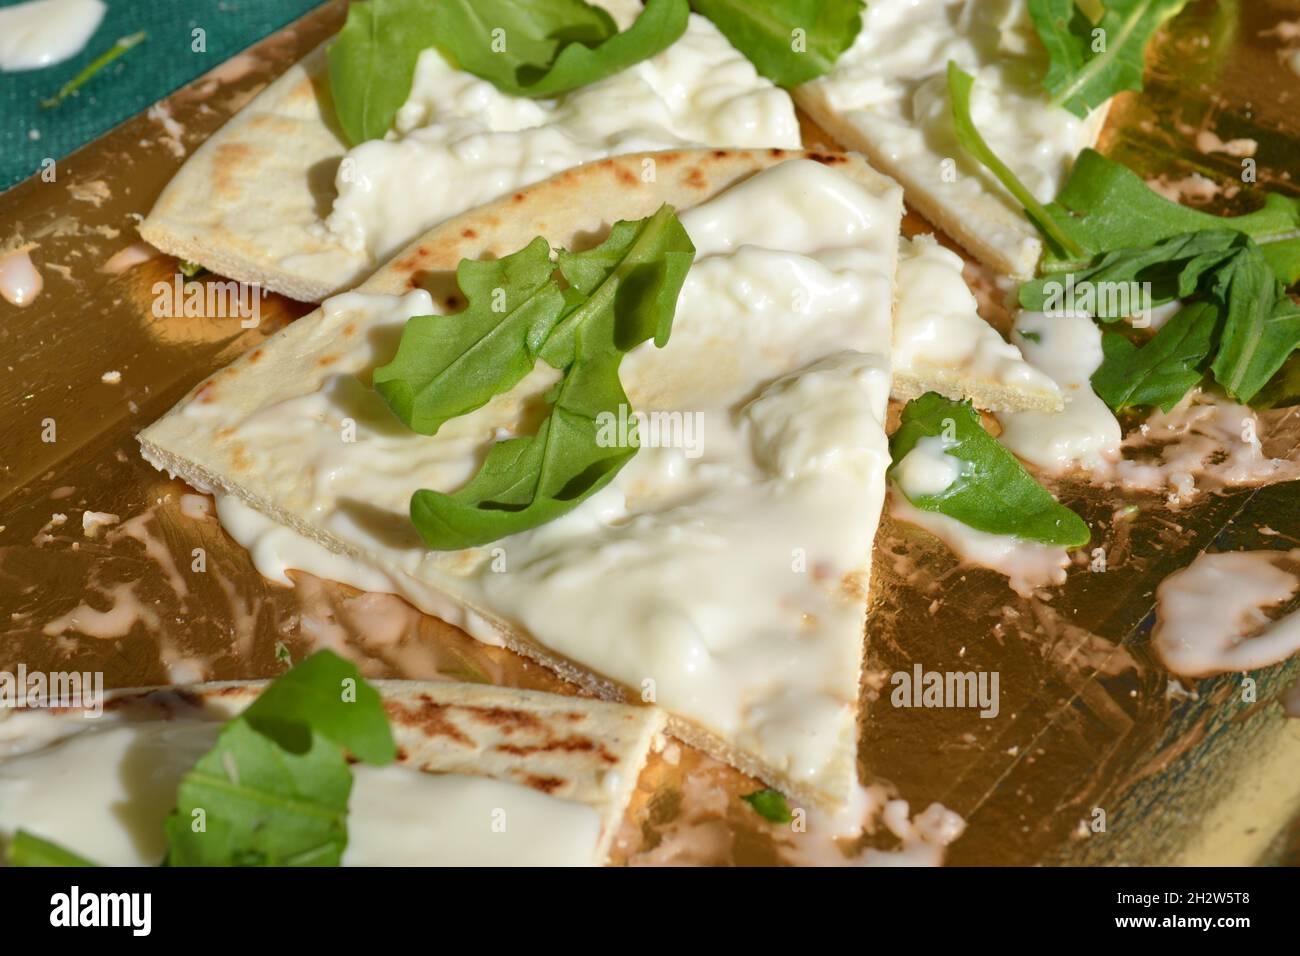 Focaccia-Stück mit weichem Weißkäse übertännt und mit Rocket Salad verziert, der auf dem goldenen Tablett unter der strahlenden Sonne platziert wurde. Italienisches Essen. Nahaufnahme Stockfoto